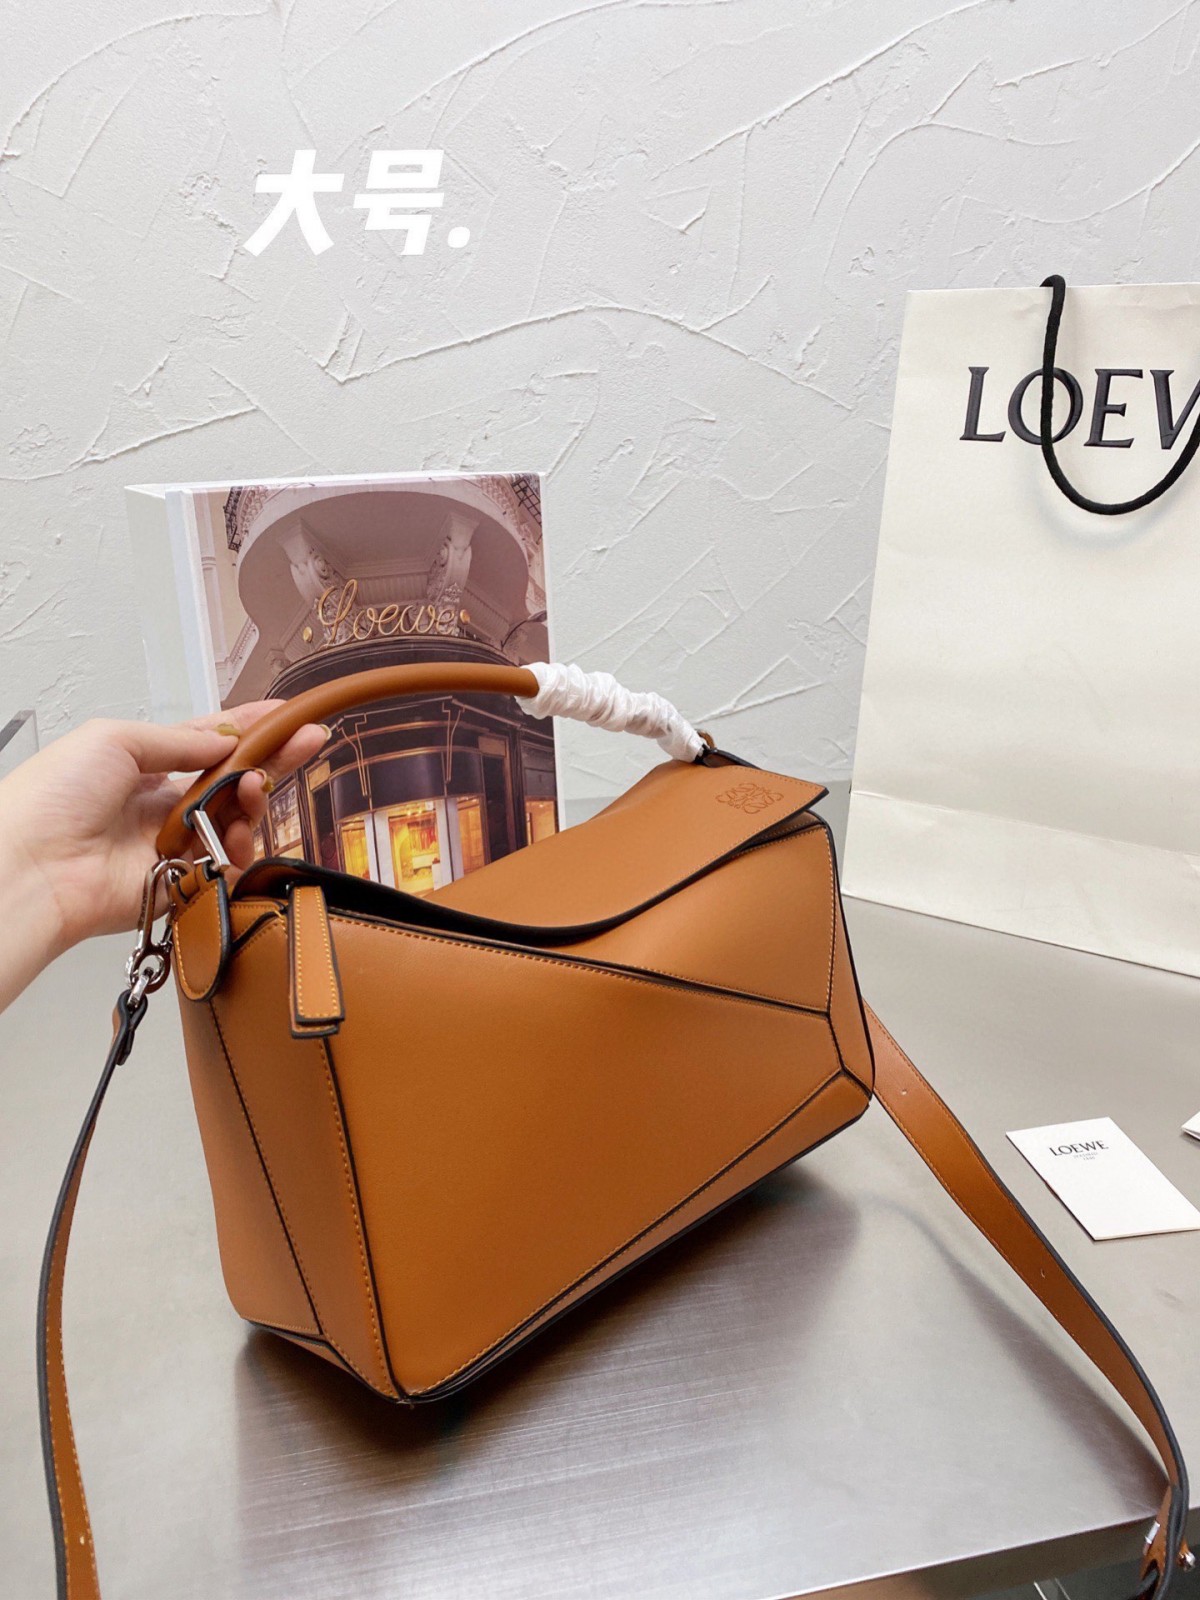 نوعية جيدة ورخيصة أكياس متماثلة Loewe Puzzle ، والثمن هو 199 دولارًا فقط؟ (أحدث 2022) -أفضل جودة متجر حقائب Louis Vuitton مزيفة على الإنترنت ، حقيبة مصمم طبق الأصل ru